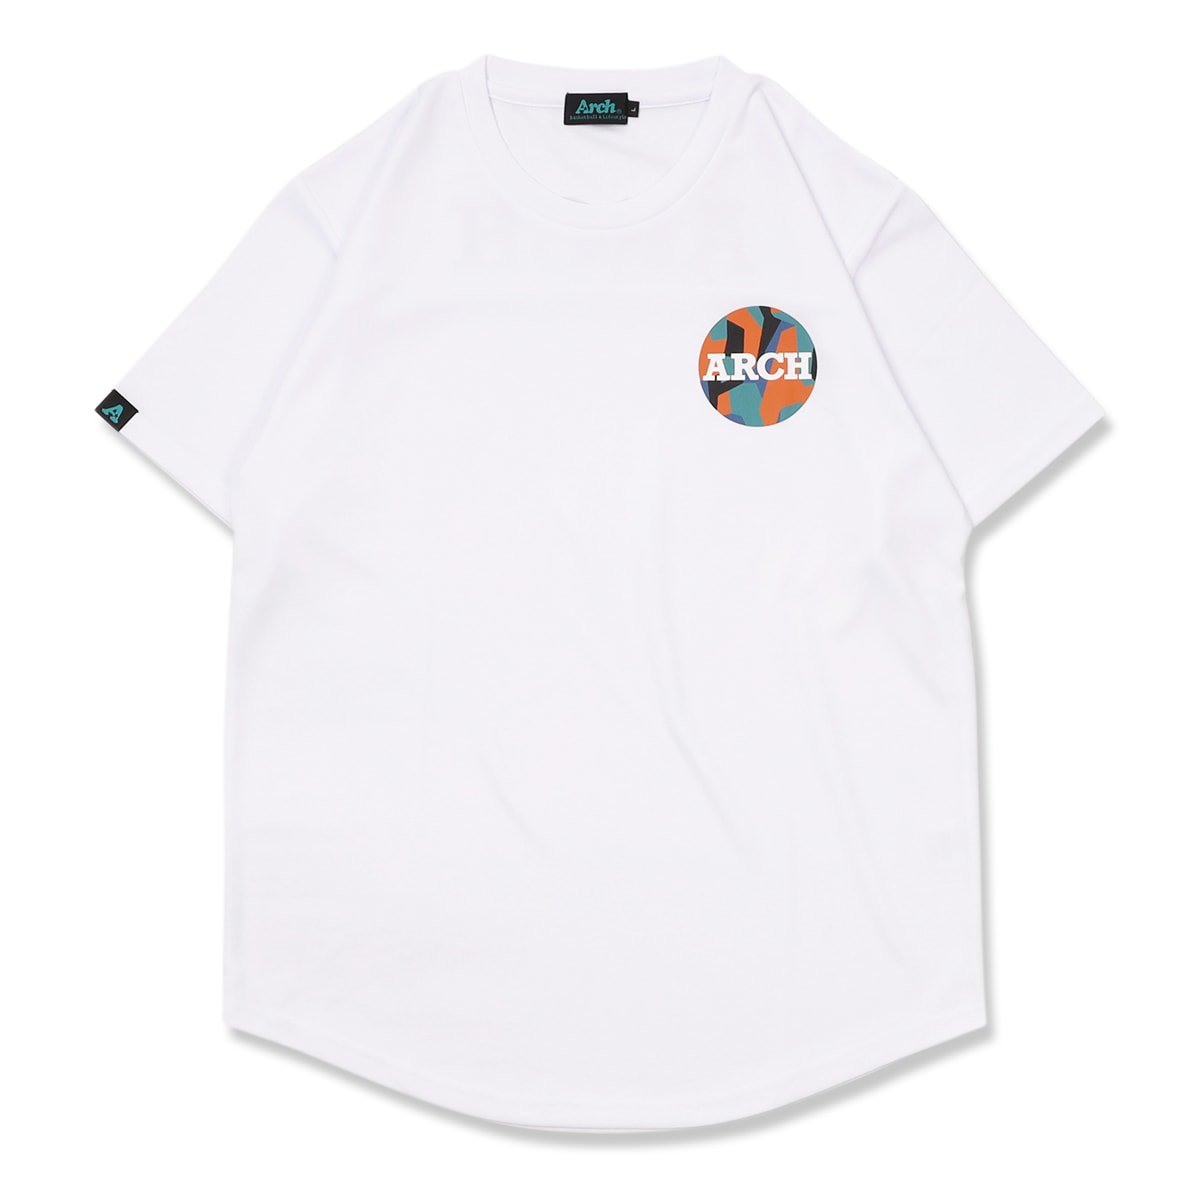 カーキ×インディゴ arch バスケ Tシャツ Mサイズ - 通販